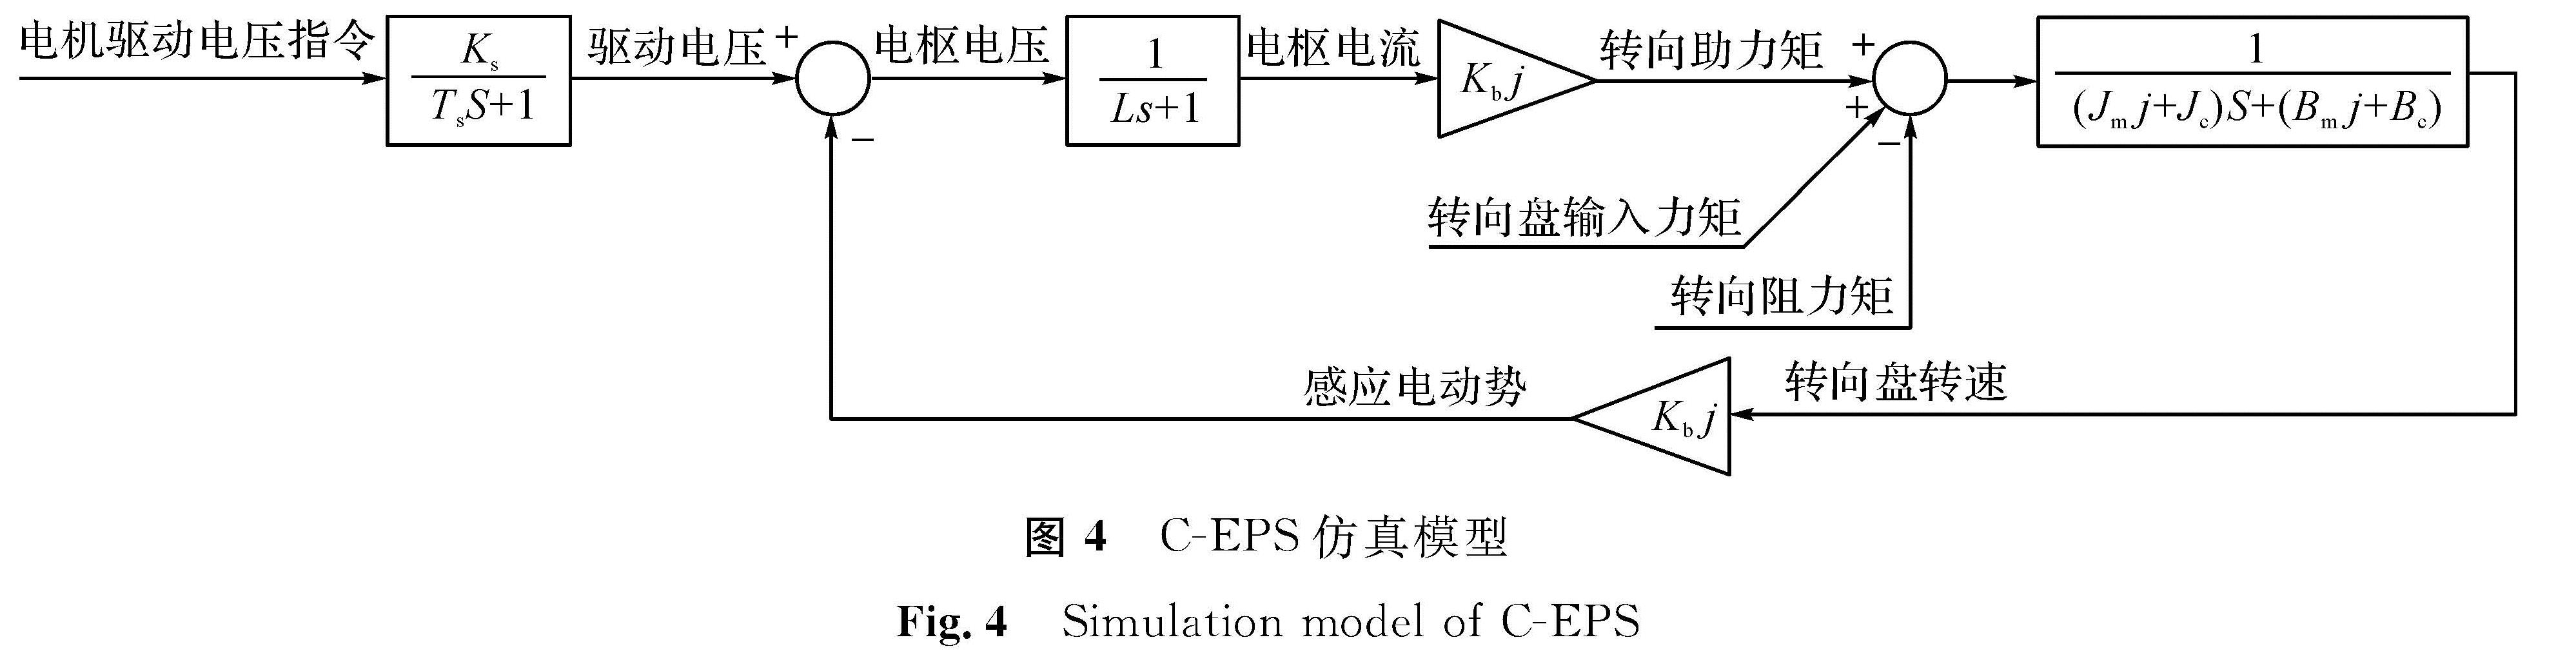 图4 C-EPS仿真模型<br/>Fig.4 Simulation model of C-EPS